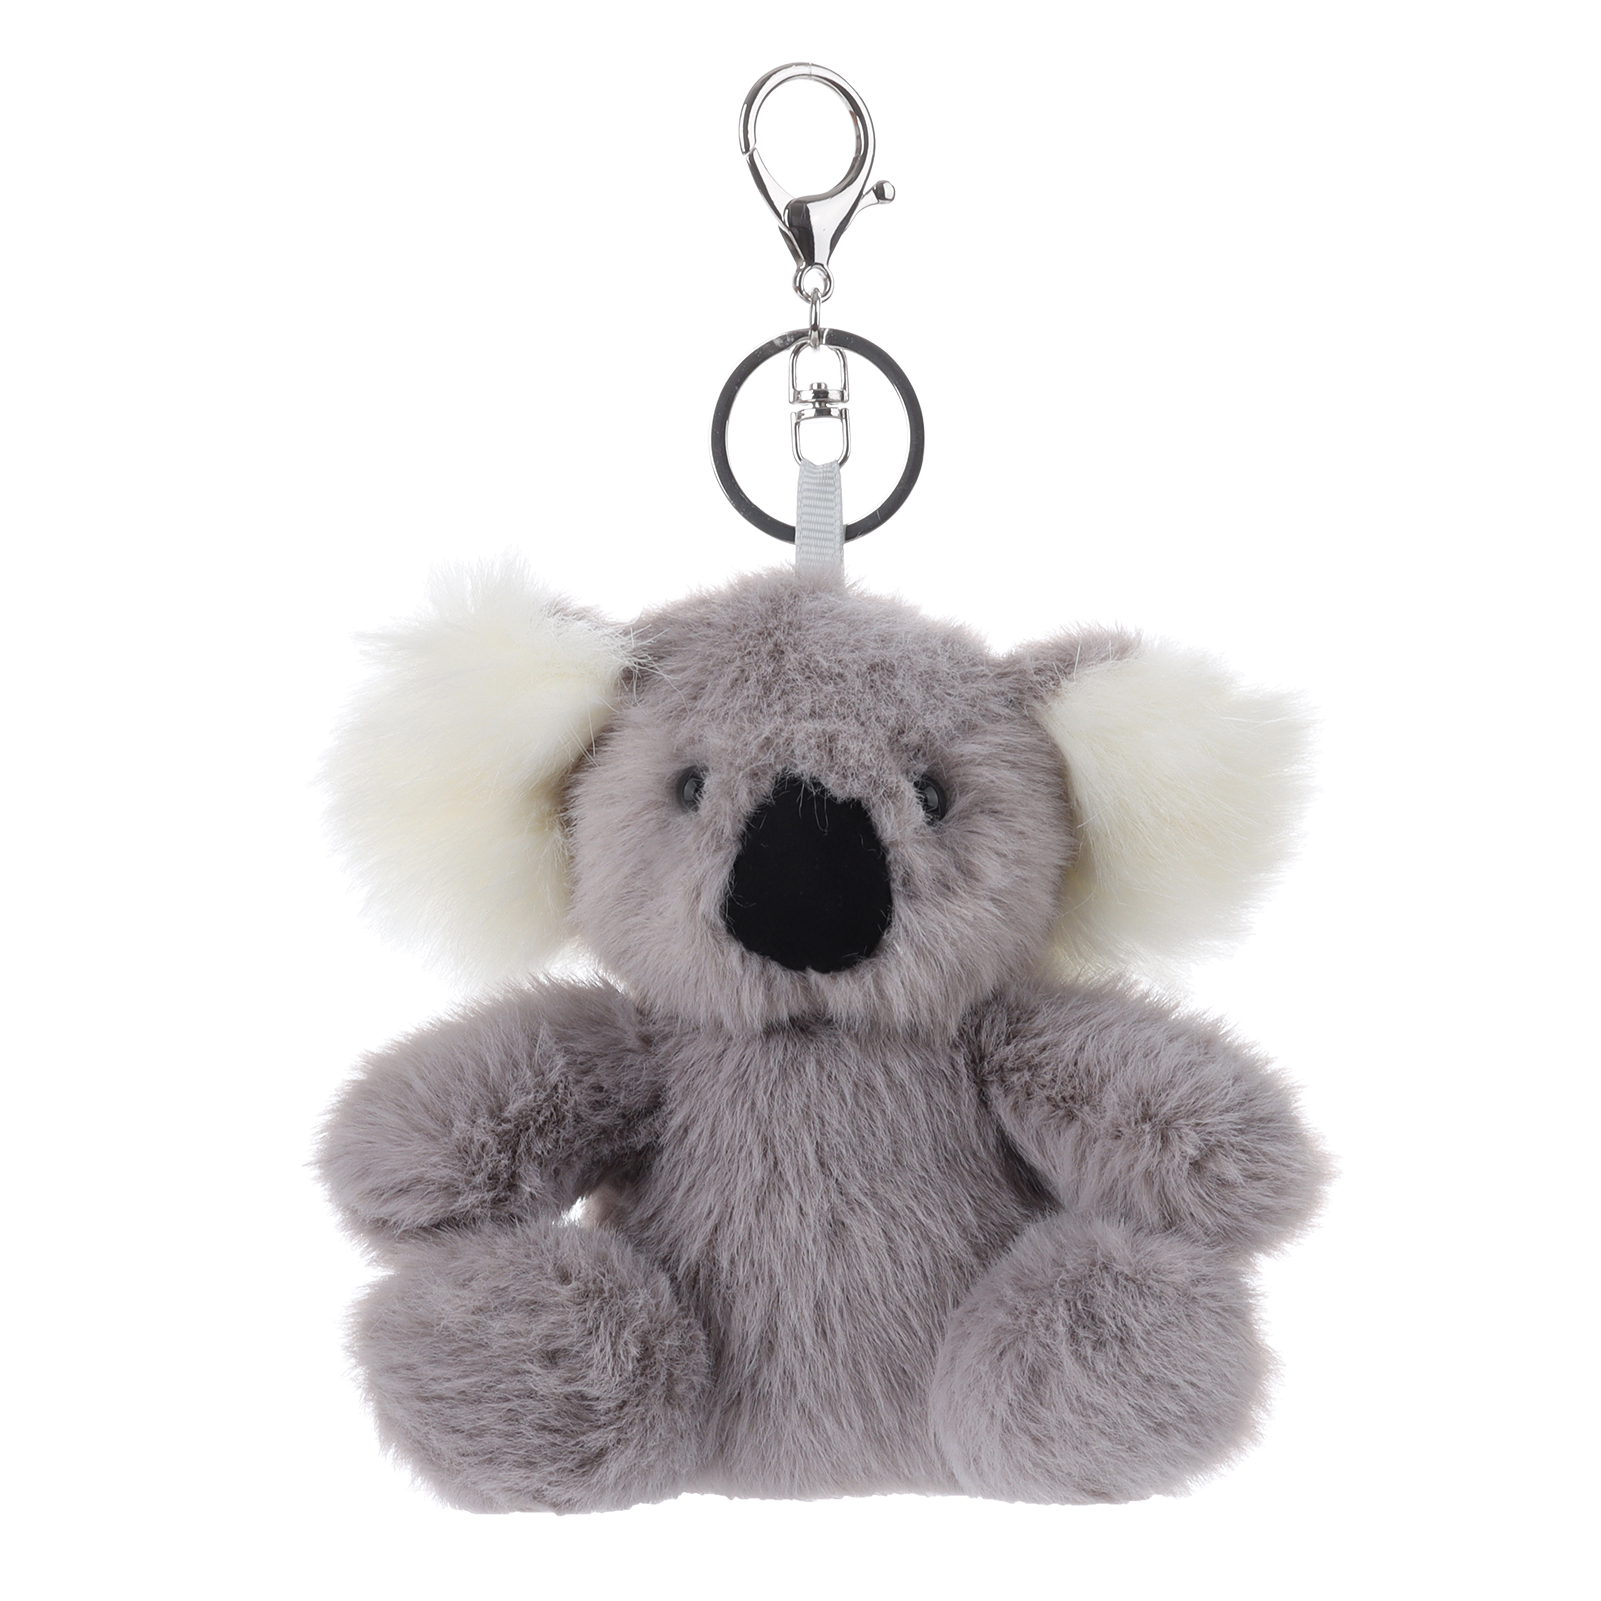 Apricot Lamb Key- Small Koala Stuffed Animal Soft Plush Toys